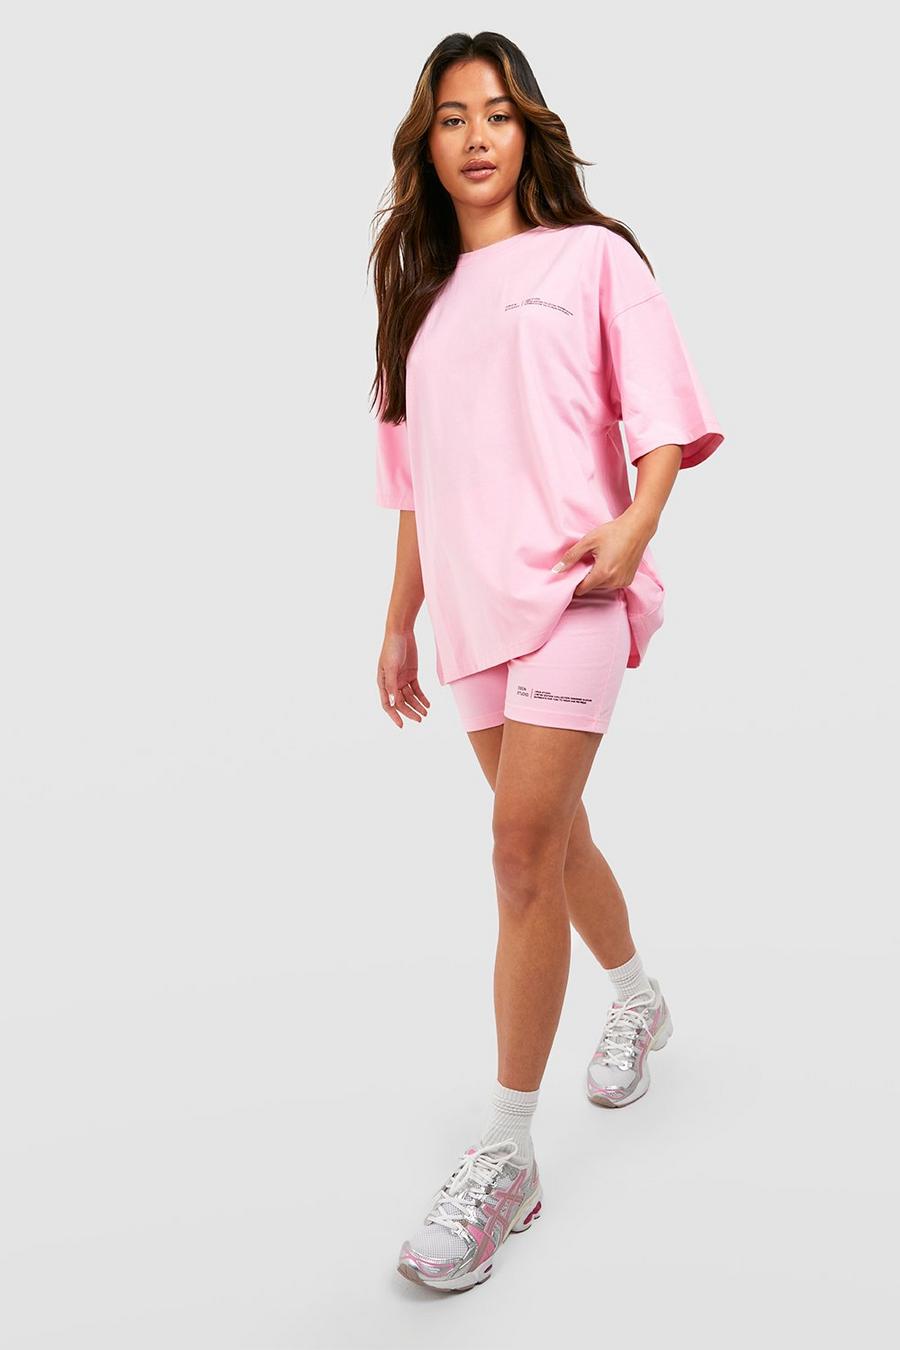 Conjunto de pantalón corto de ciclista y camiseta oversize con eslogan Dsgn Studio, Pink